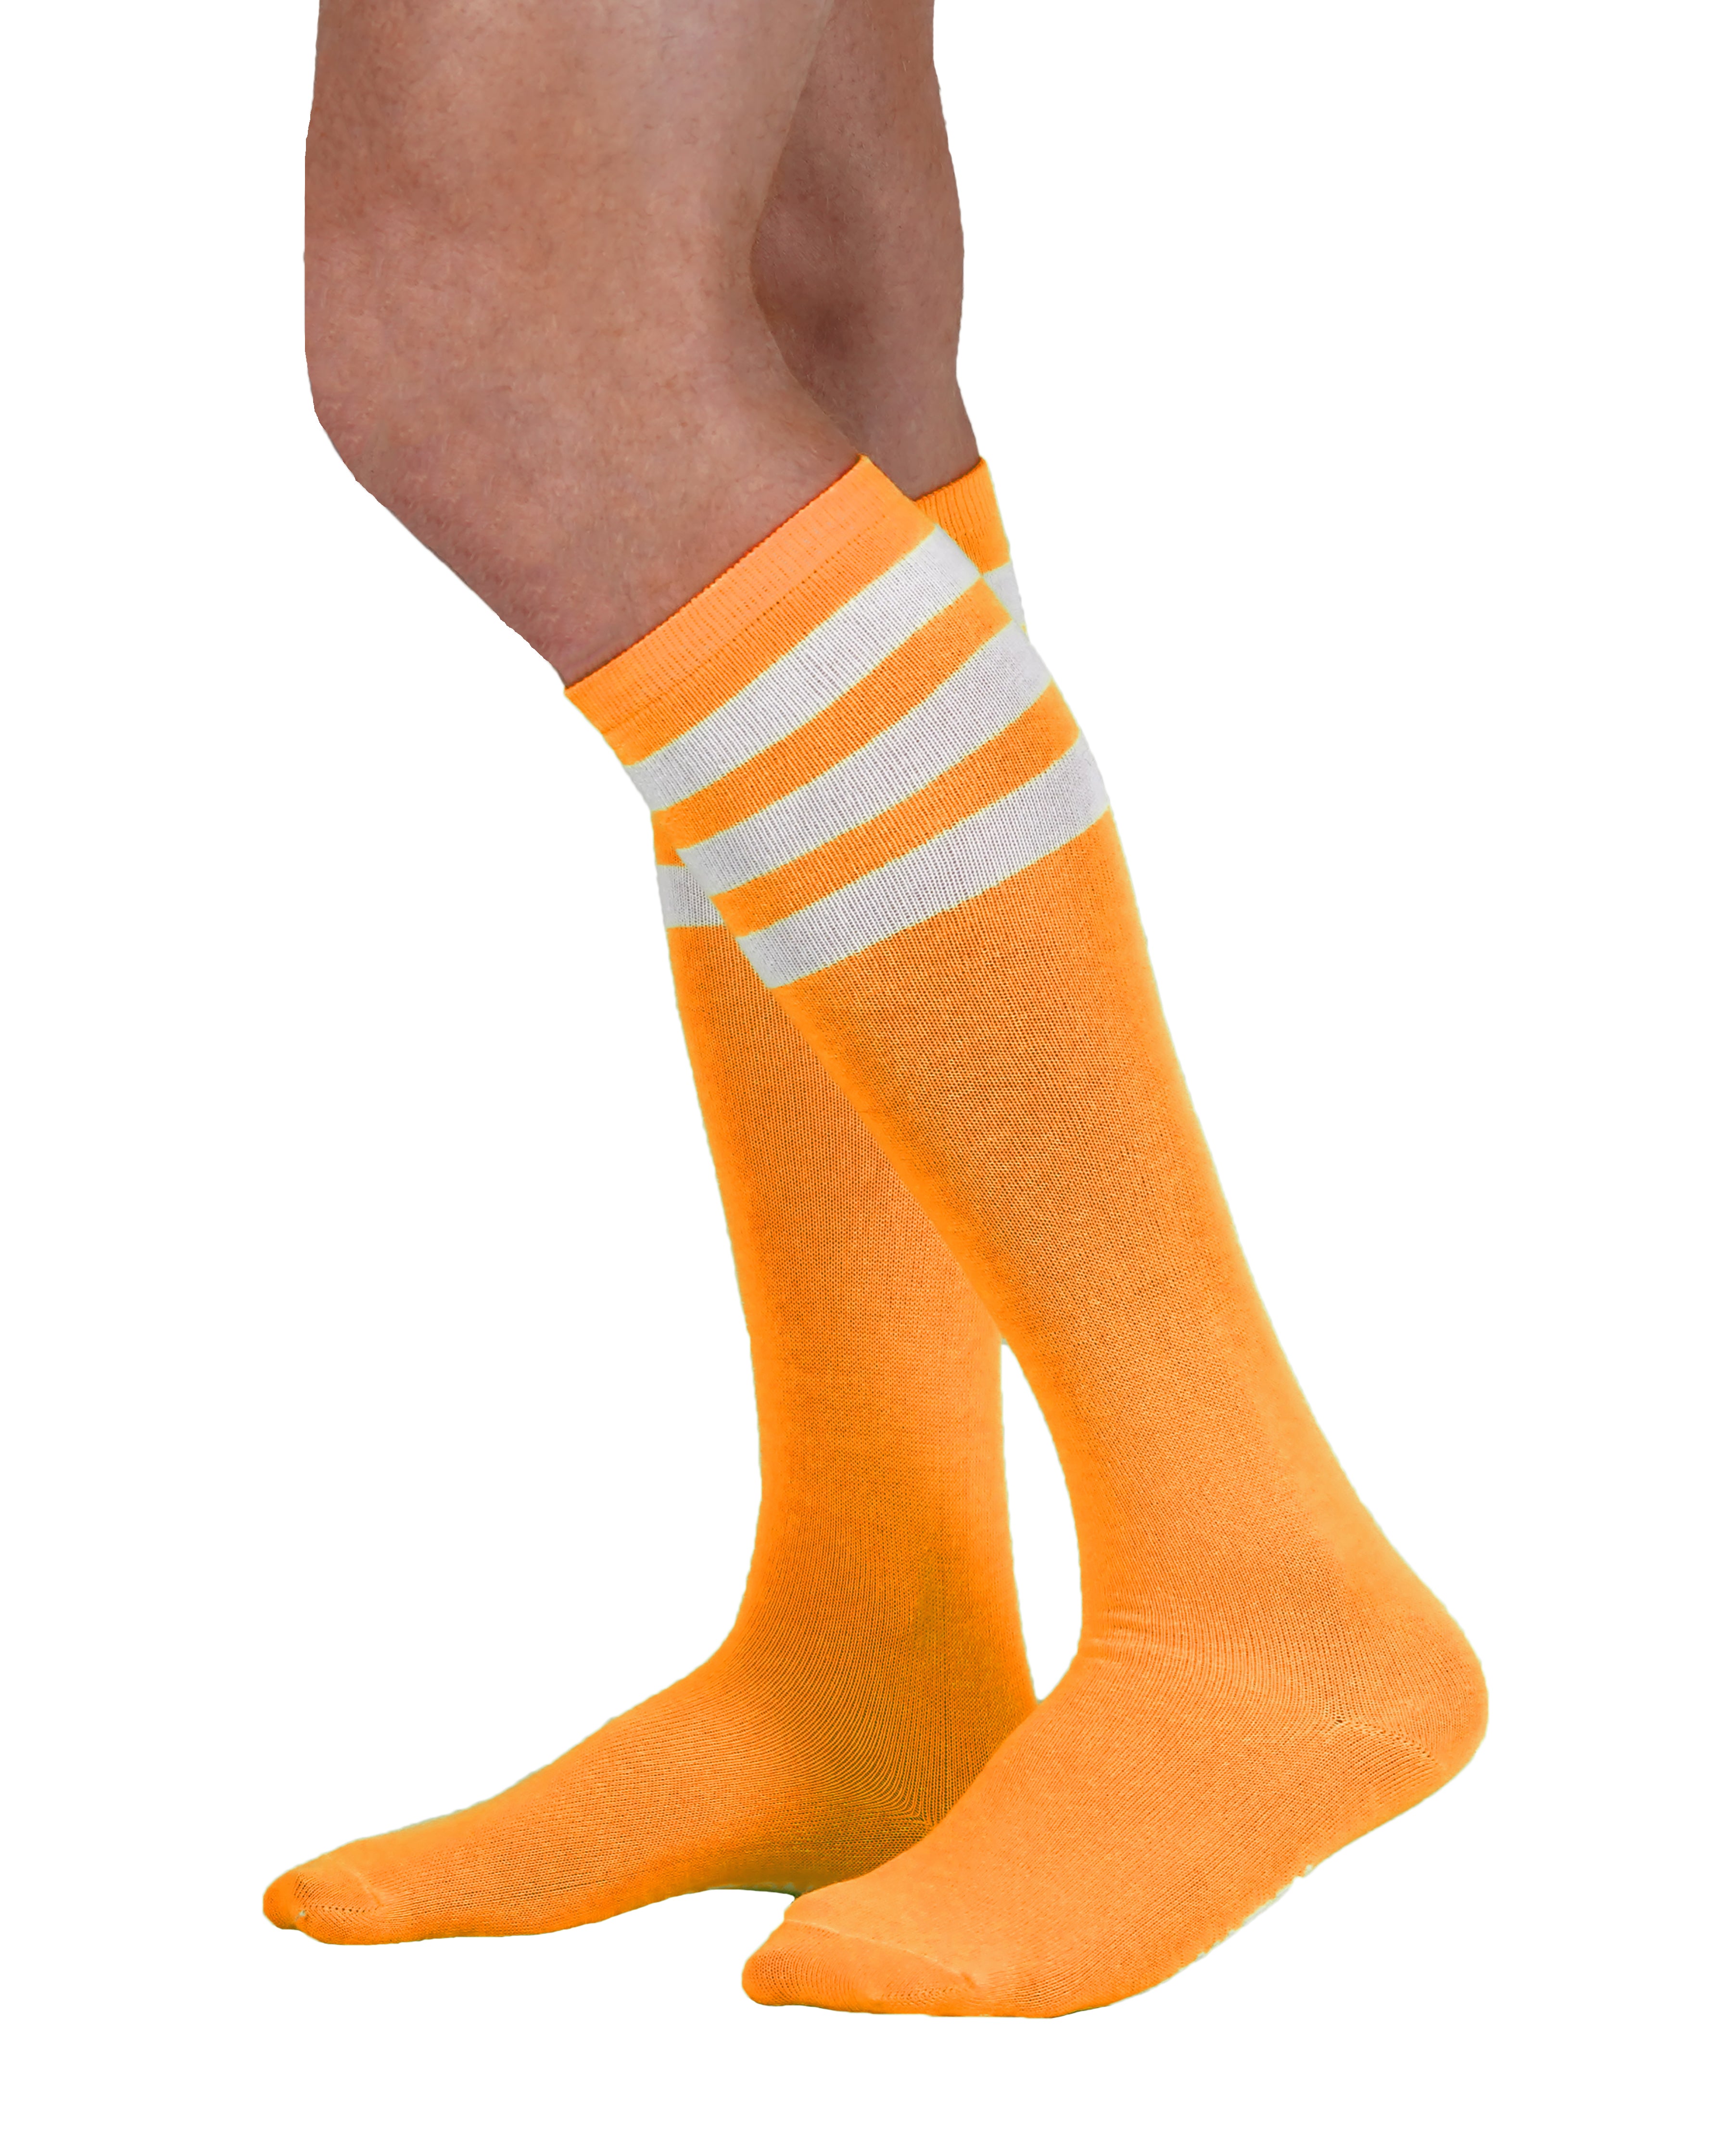 Unisex Neon Knee High Tube Socks (6 Pack)